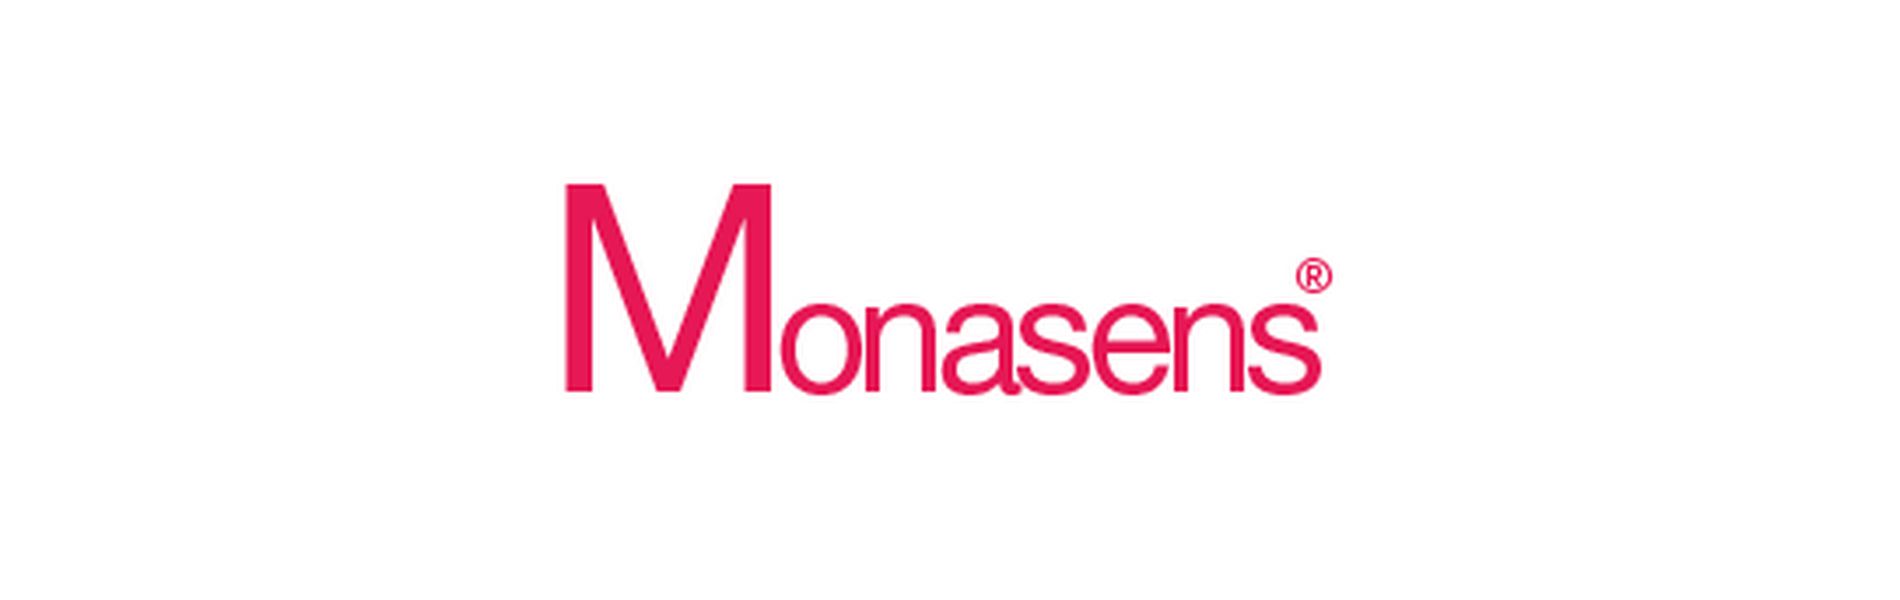 Monasens